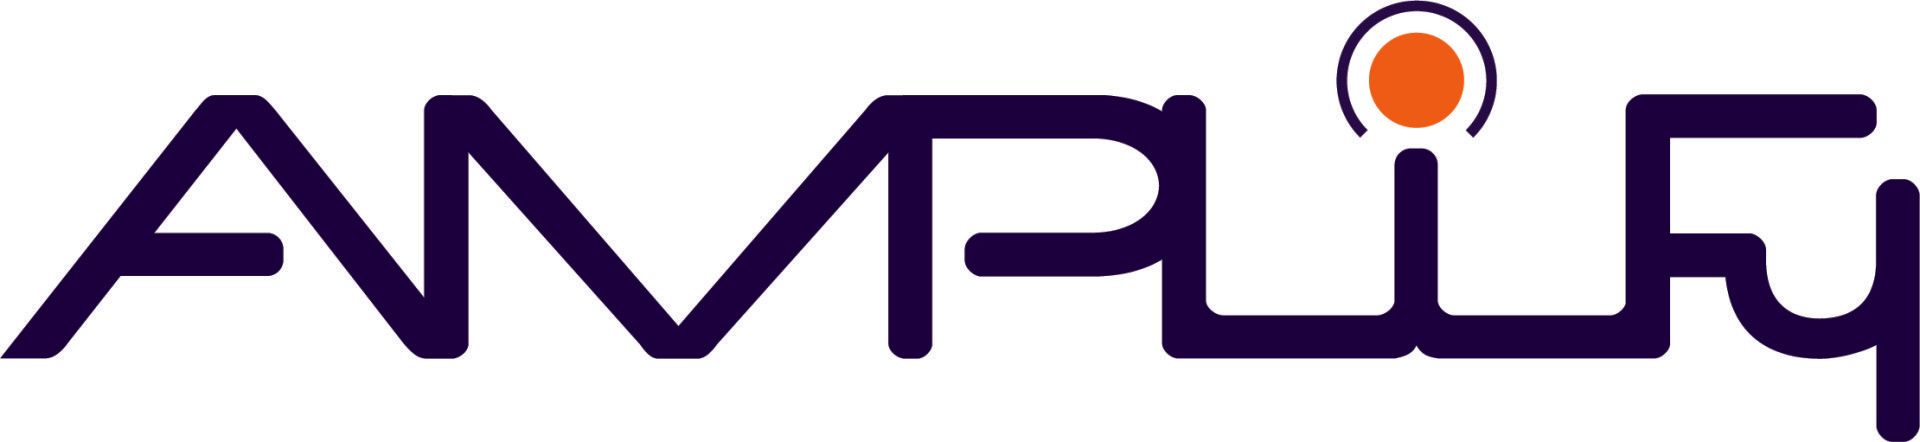 Amplify_Partner_Company